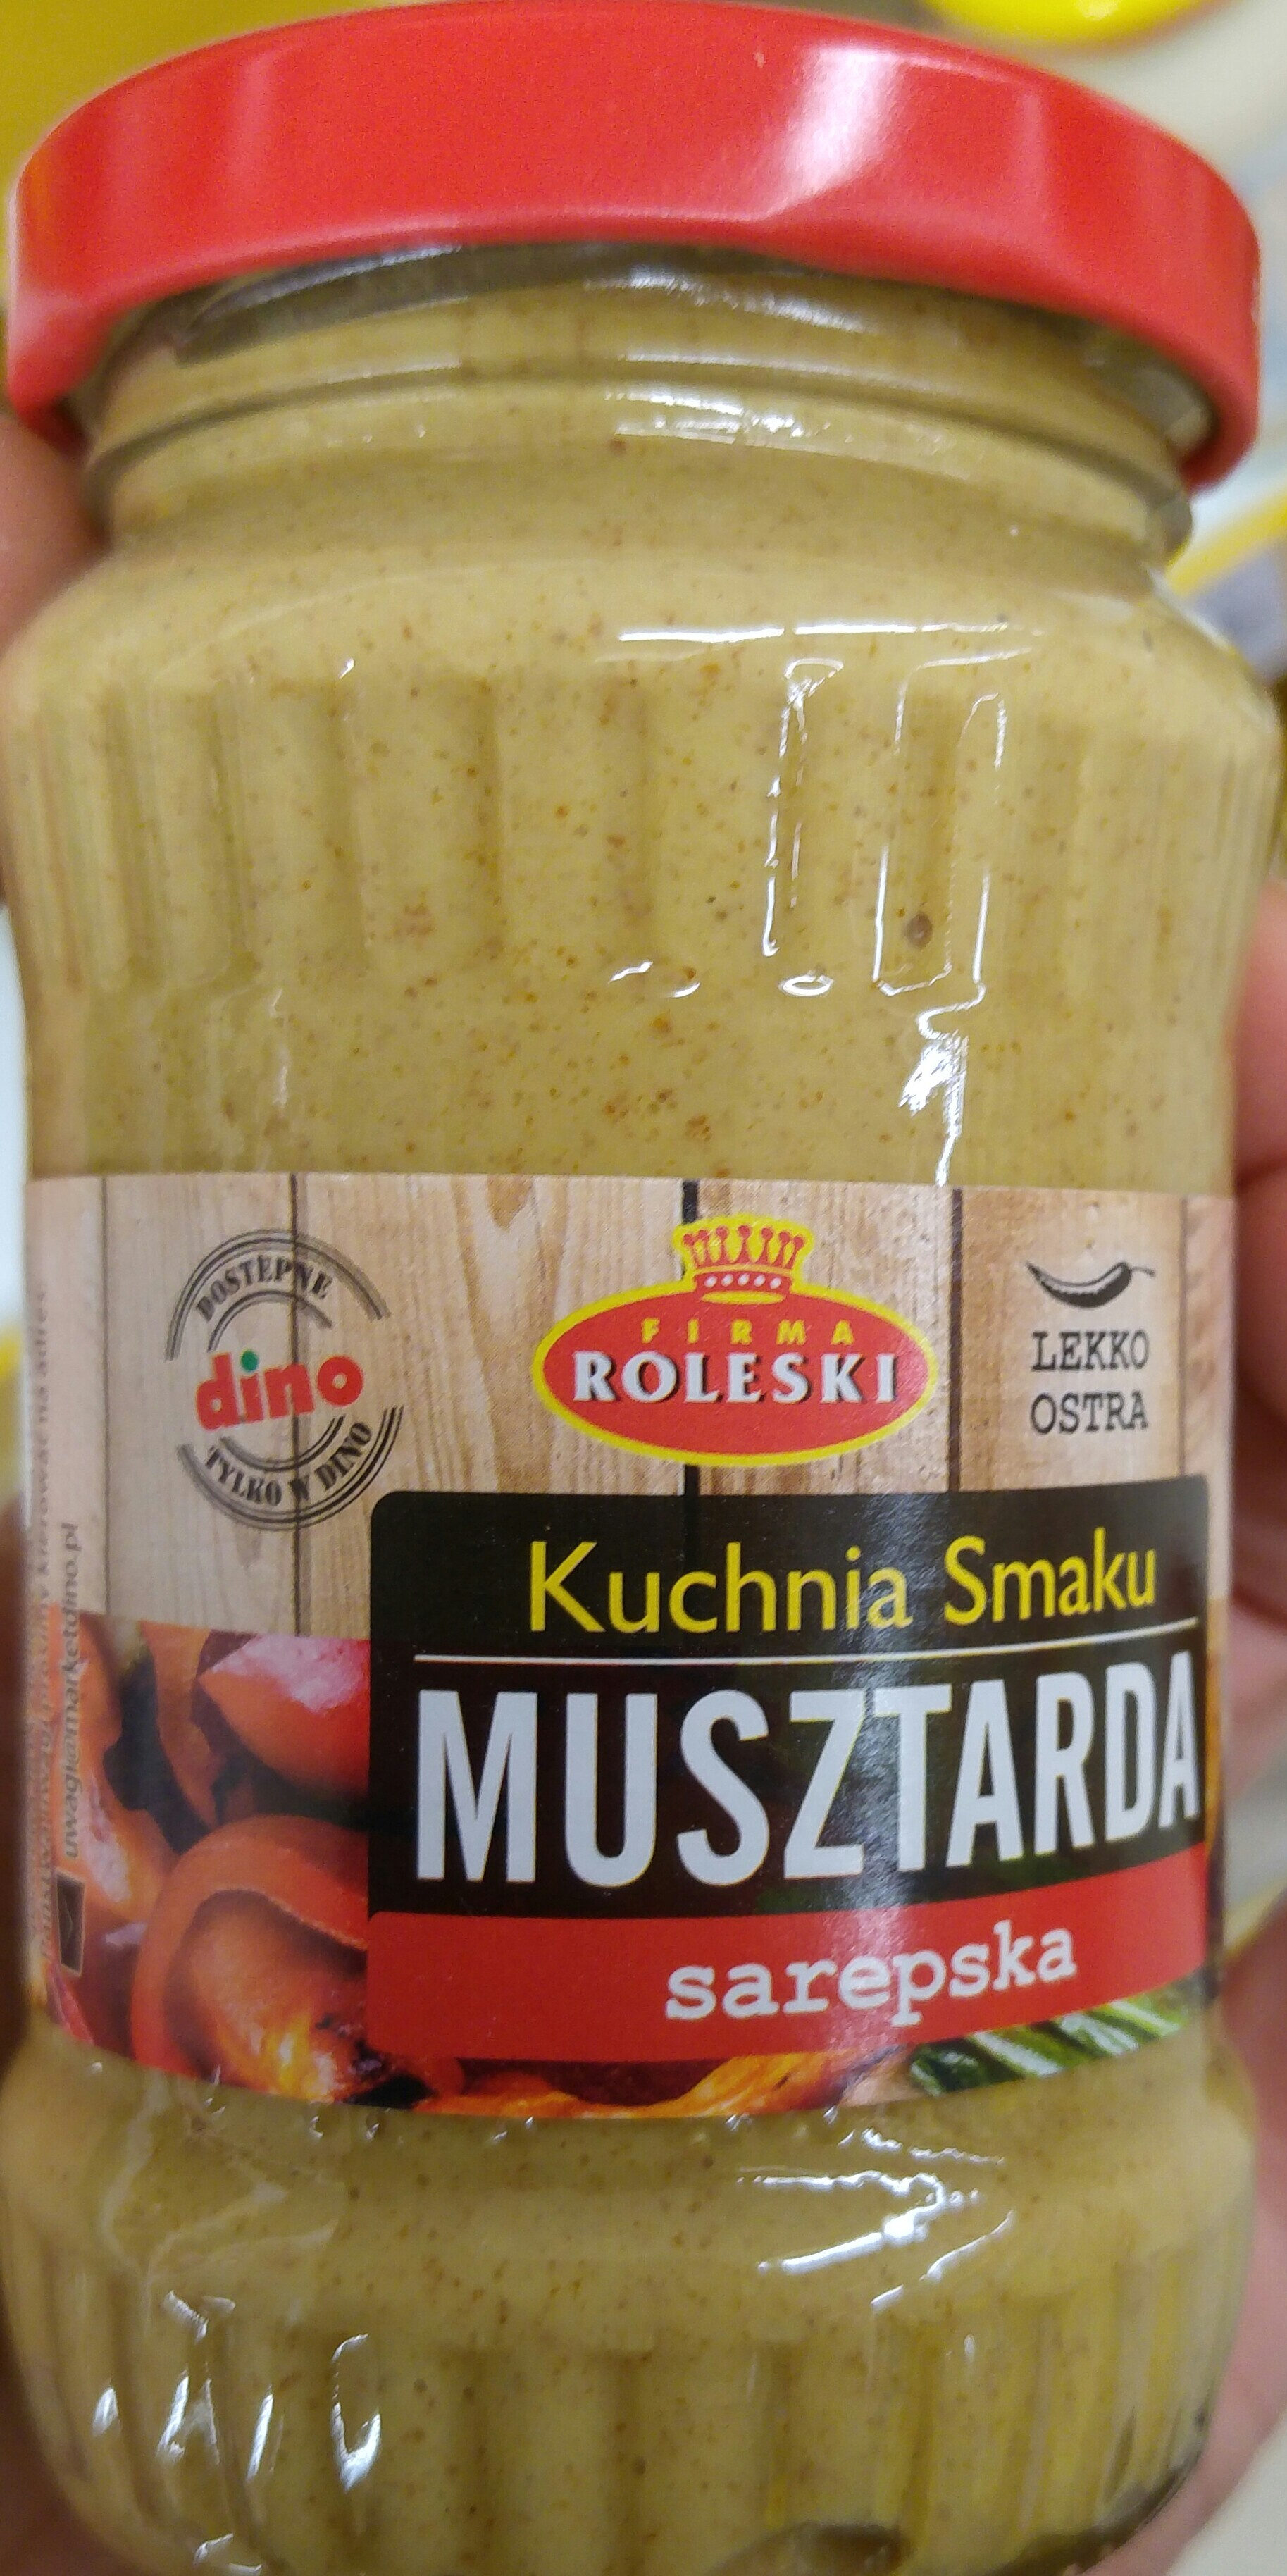 Kuchnia Smaku Musztarda Sarepska - Product - pl